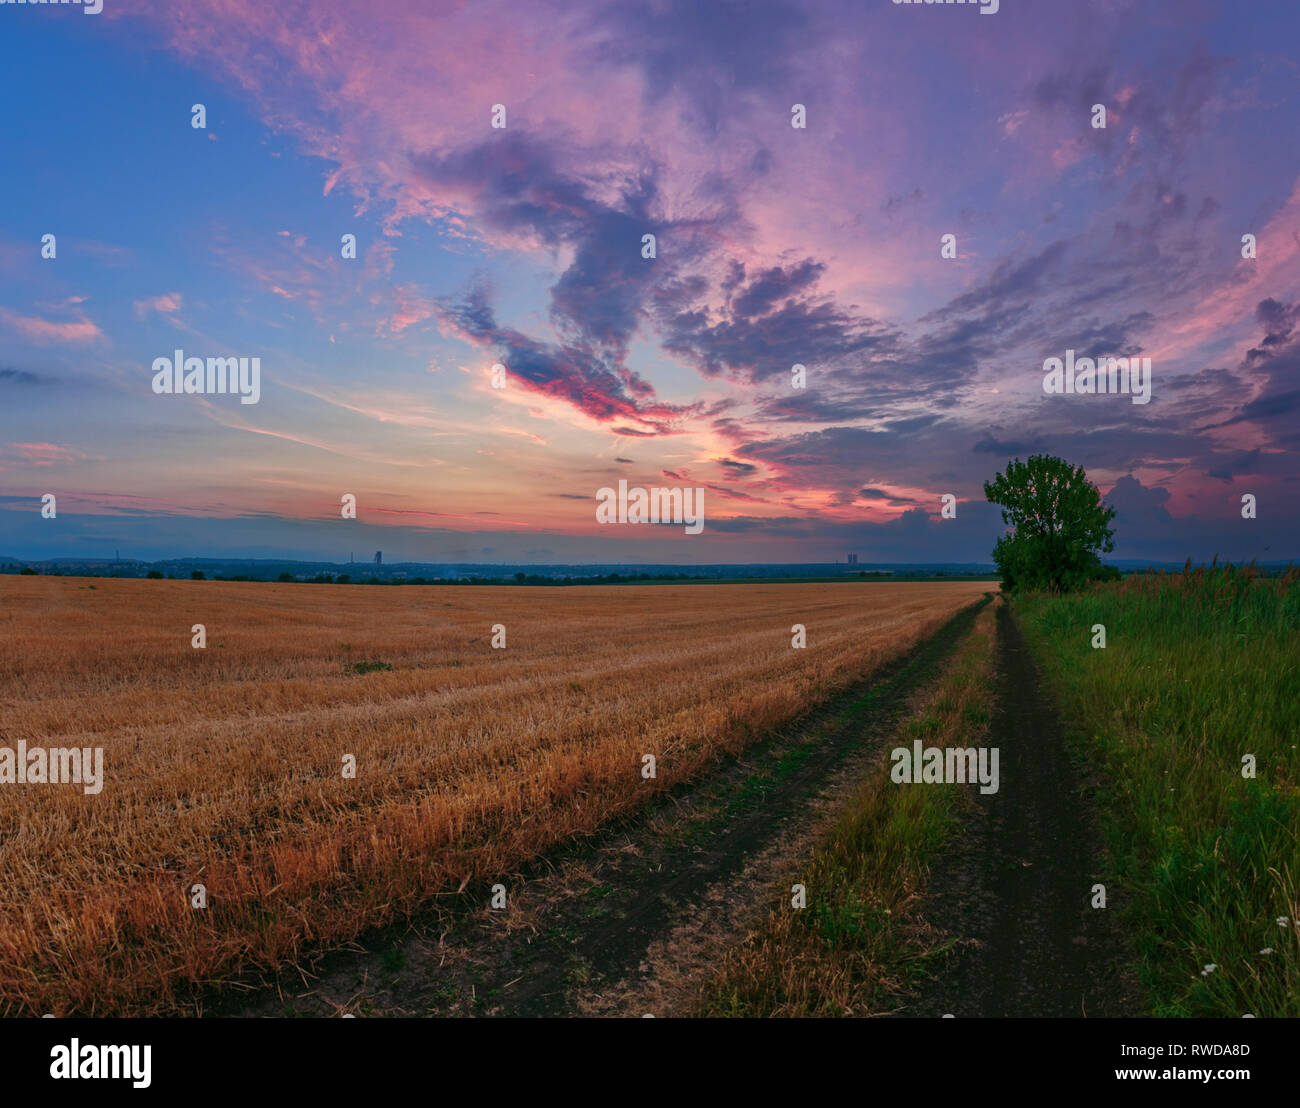 Un sentier près de la céréale de blé champ sur le ciel nuageux fond coucher de soleil Banque D'Images